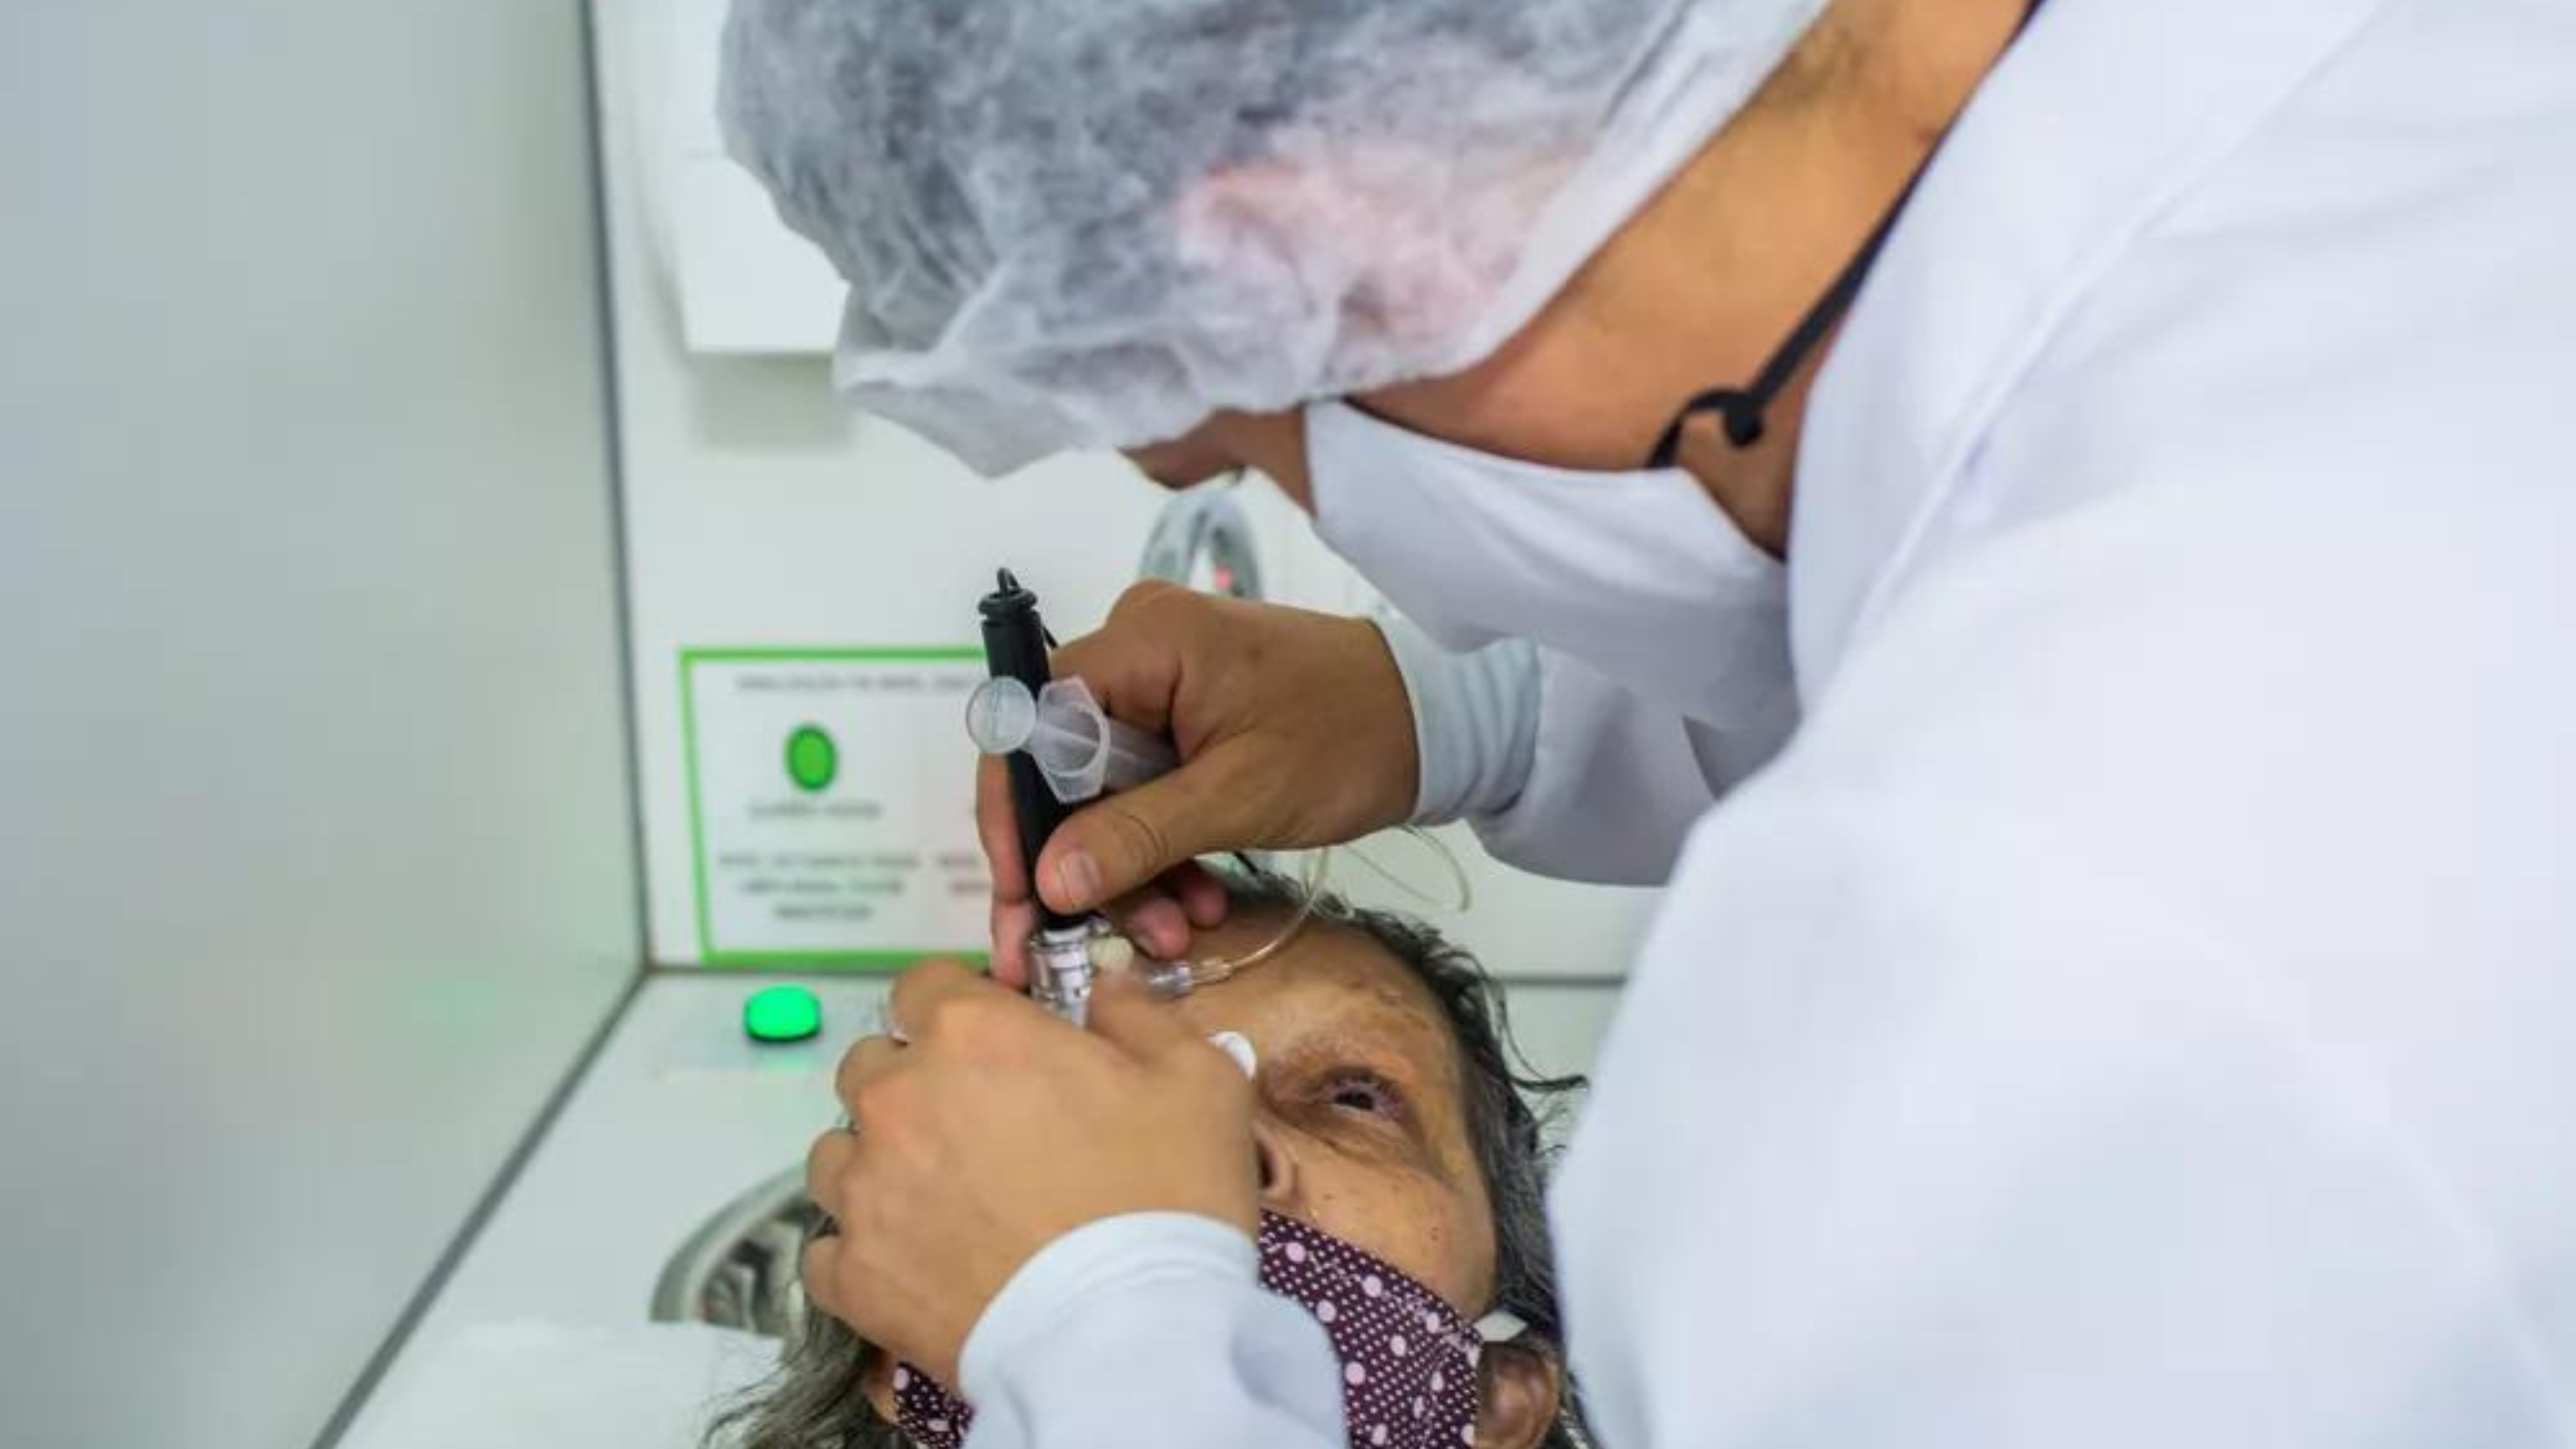 Entidades oftalmológicas publicam recomendações após casos de infecções pós-cirúrgicas no AP